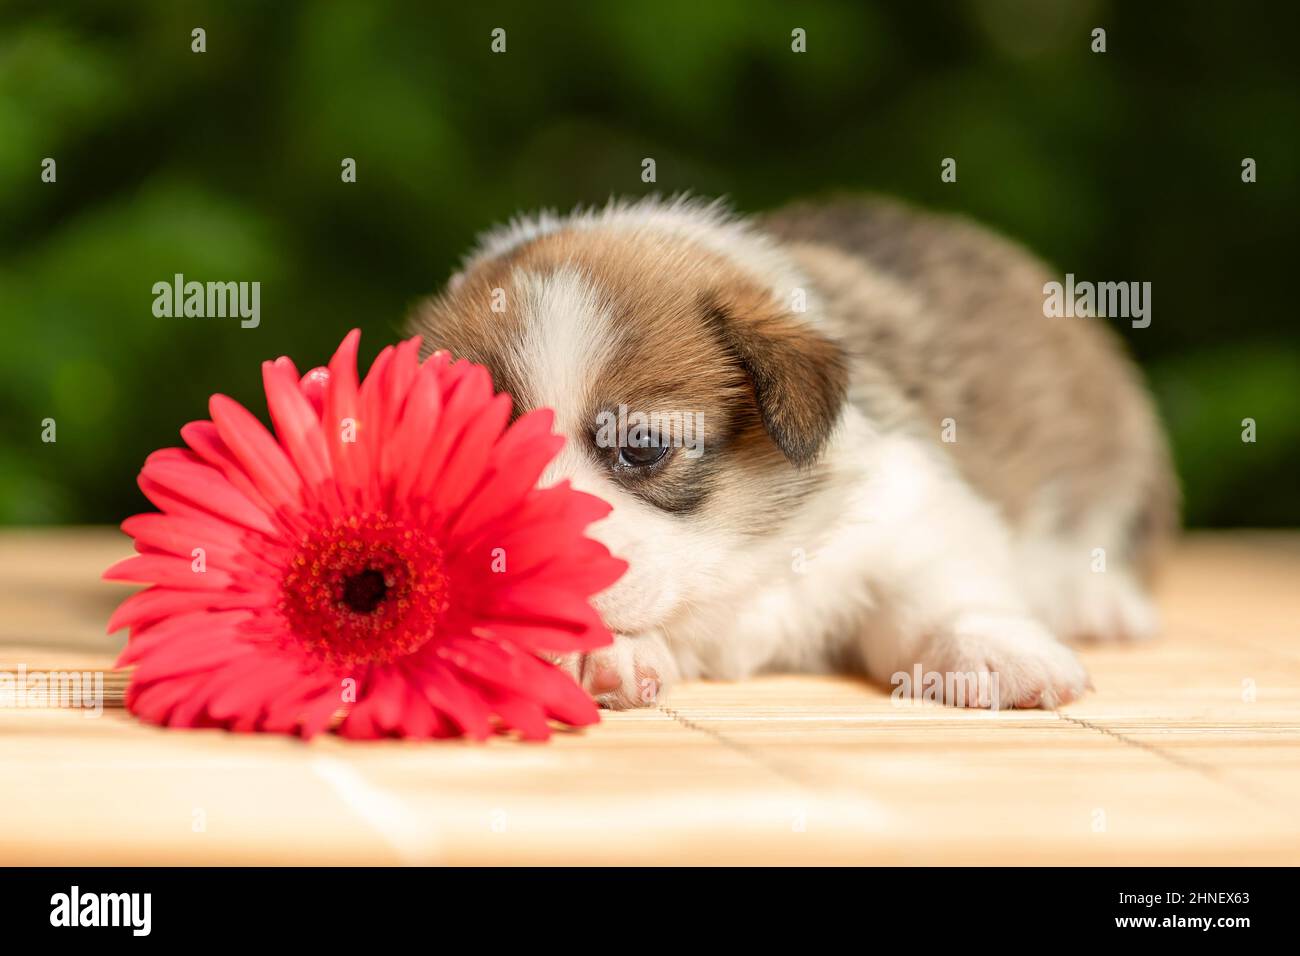 Timide drôle petit chiot de pembroke gallois corgi race chien couché à l'extérieur derrière la fleur rose Banque D'Images